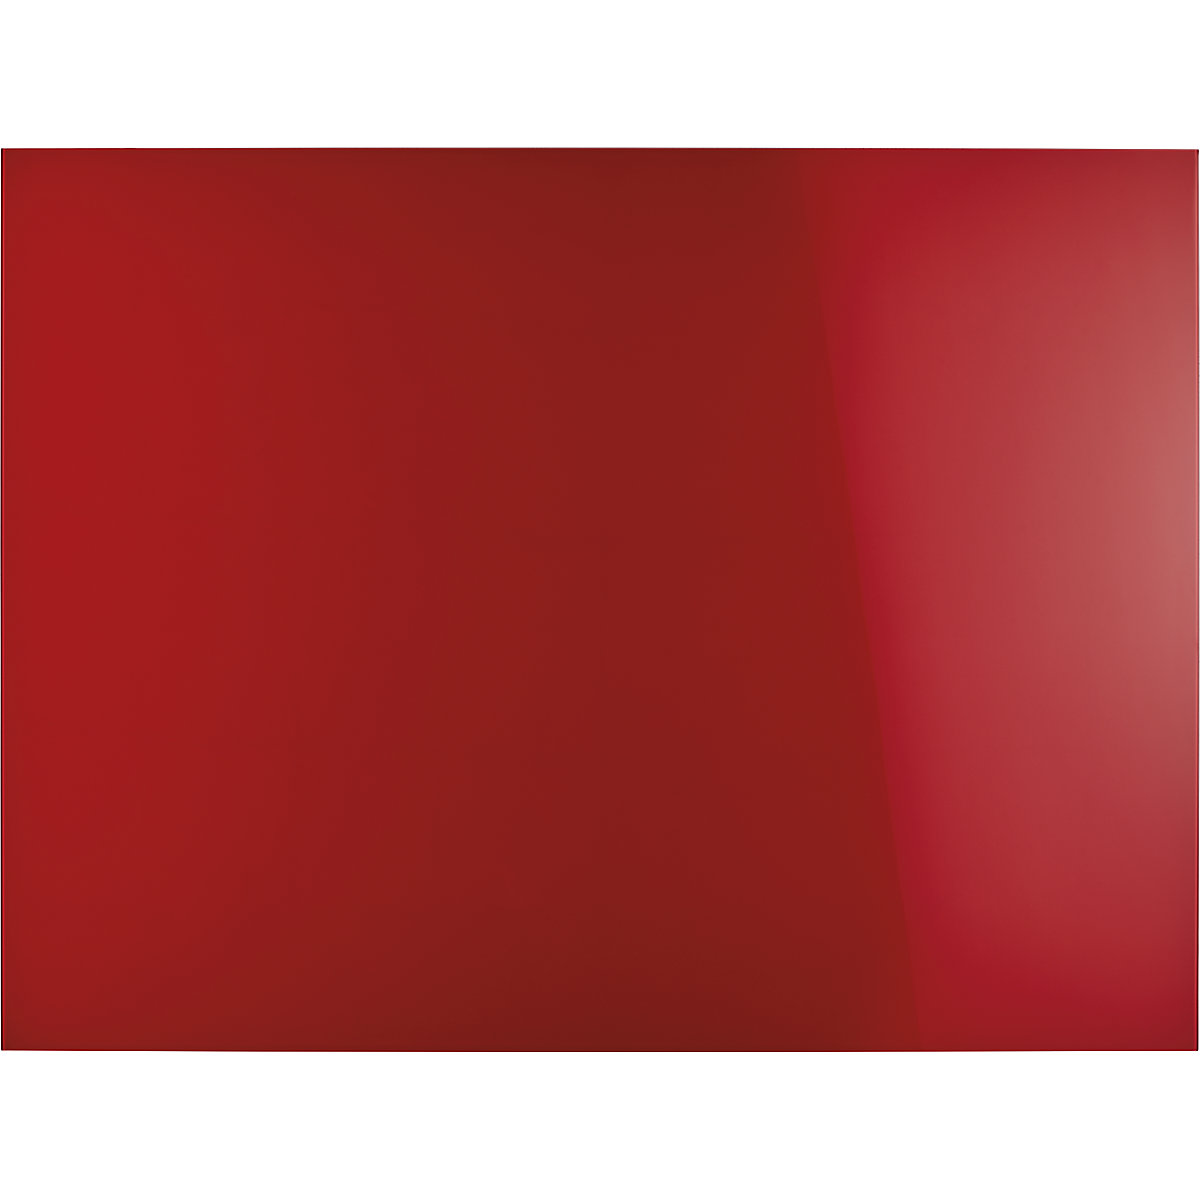 magnetoplan – Dizajnerska staklena ploča, magnetna, ŠxV 1200 x 900 mm, u intenzivno crvenoj boji